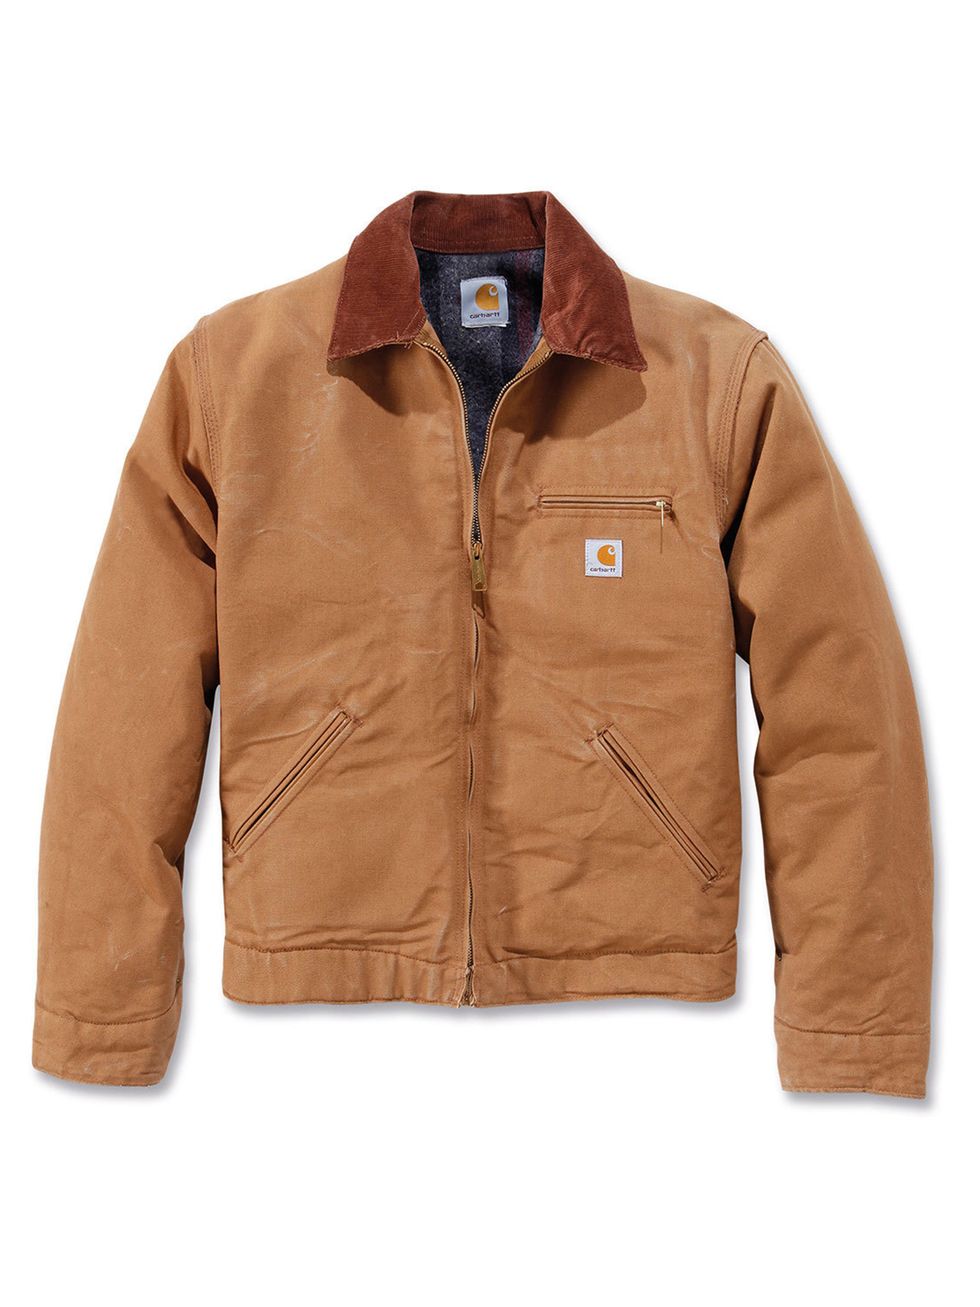 carhartt-jacket-1537540611.jpg